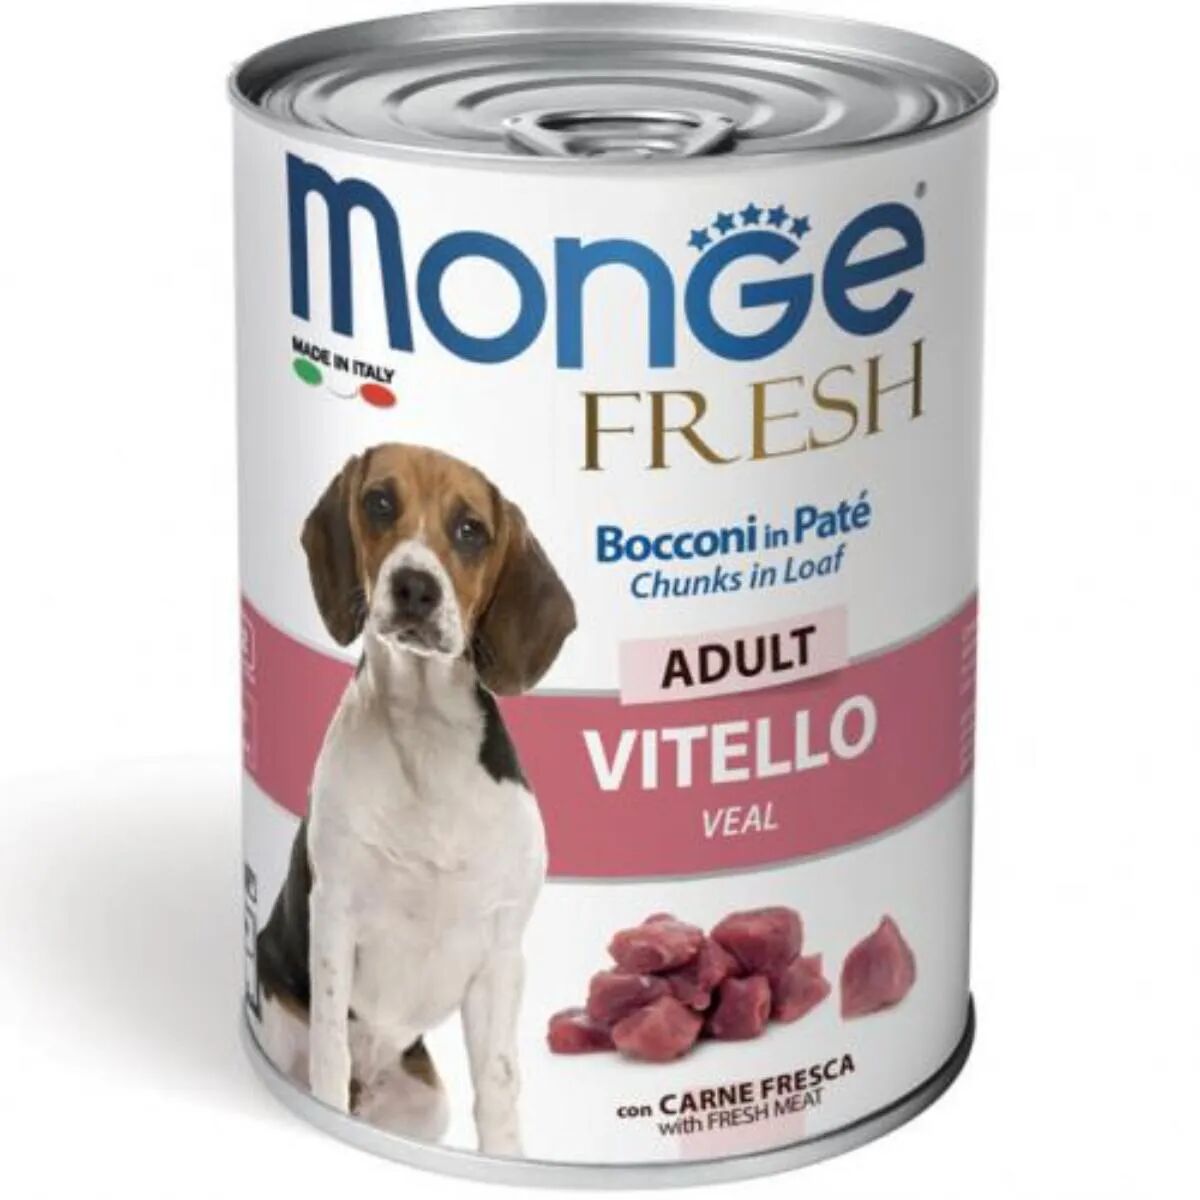 monge fresh dog lattina 400g vitello